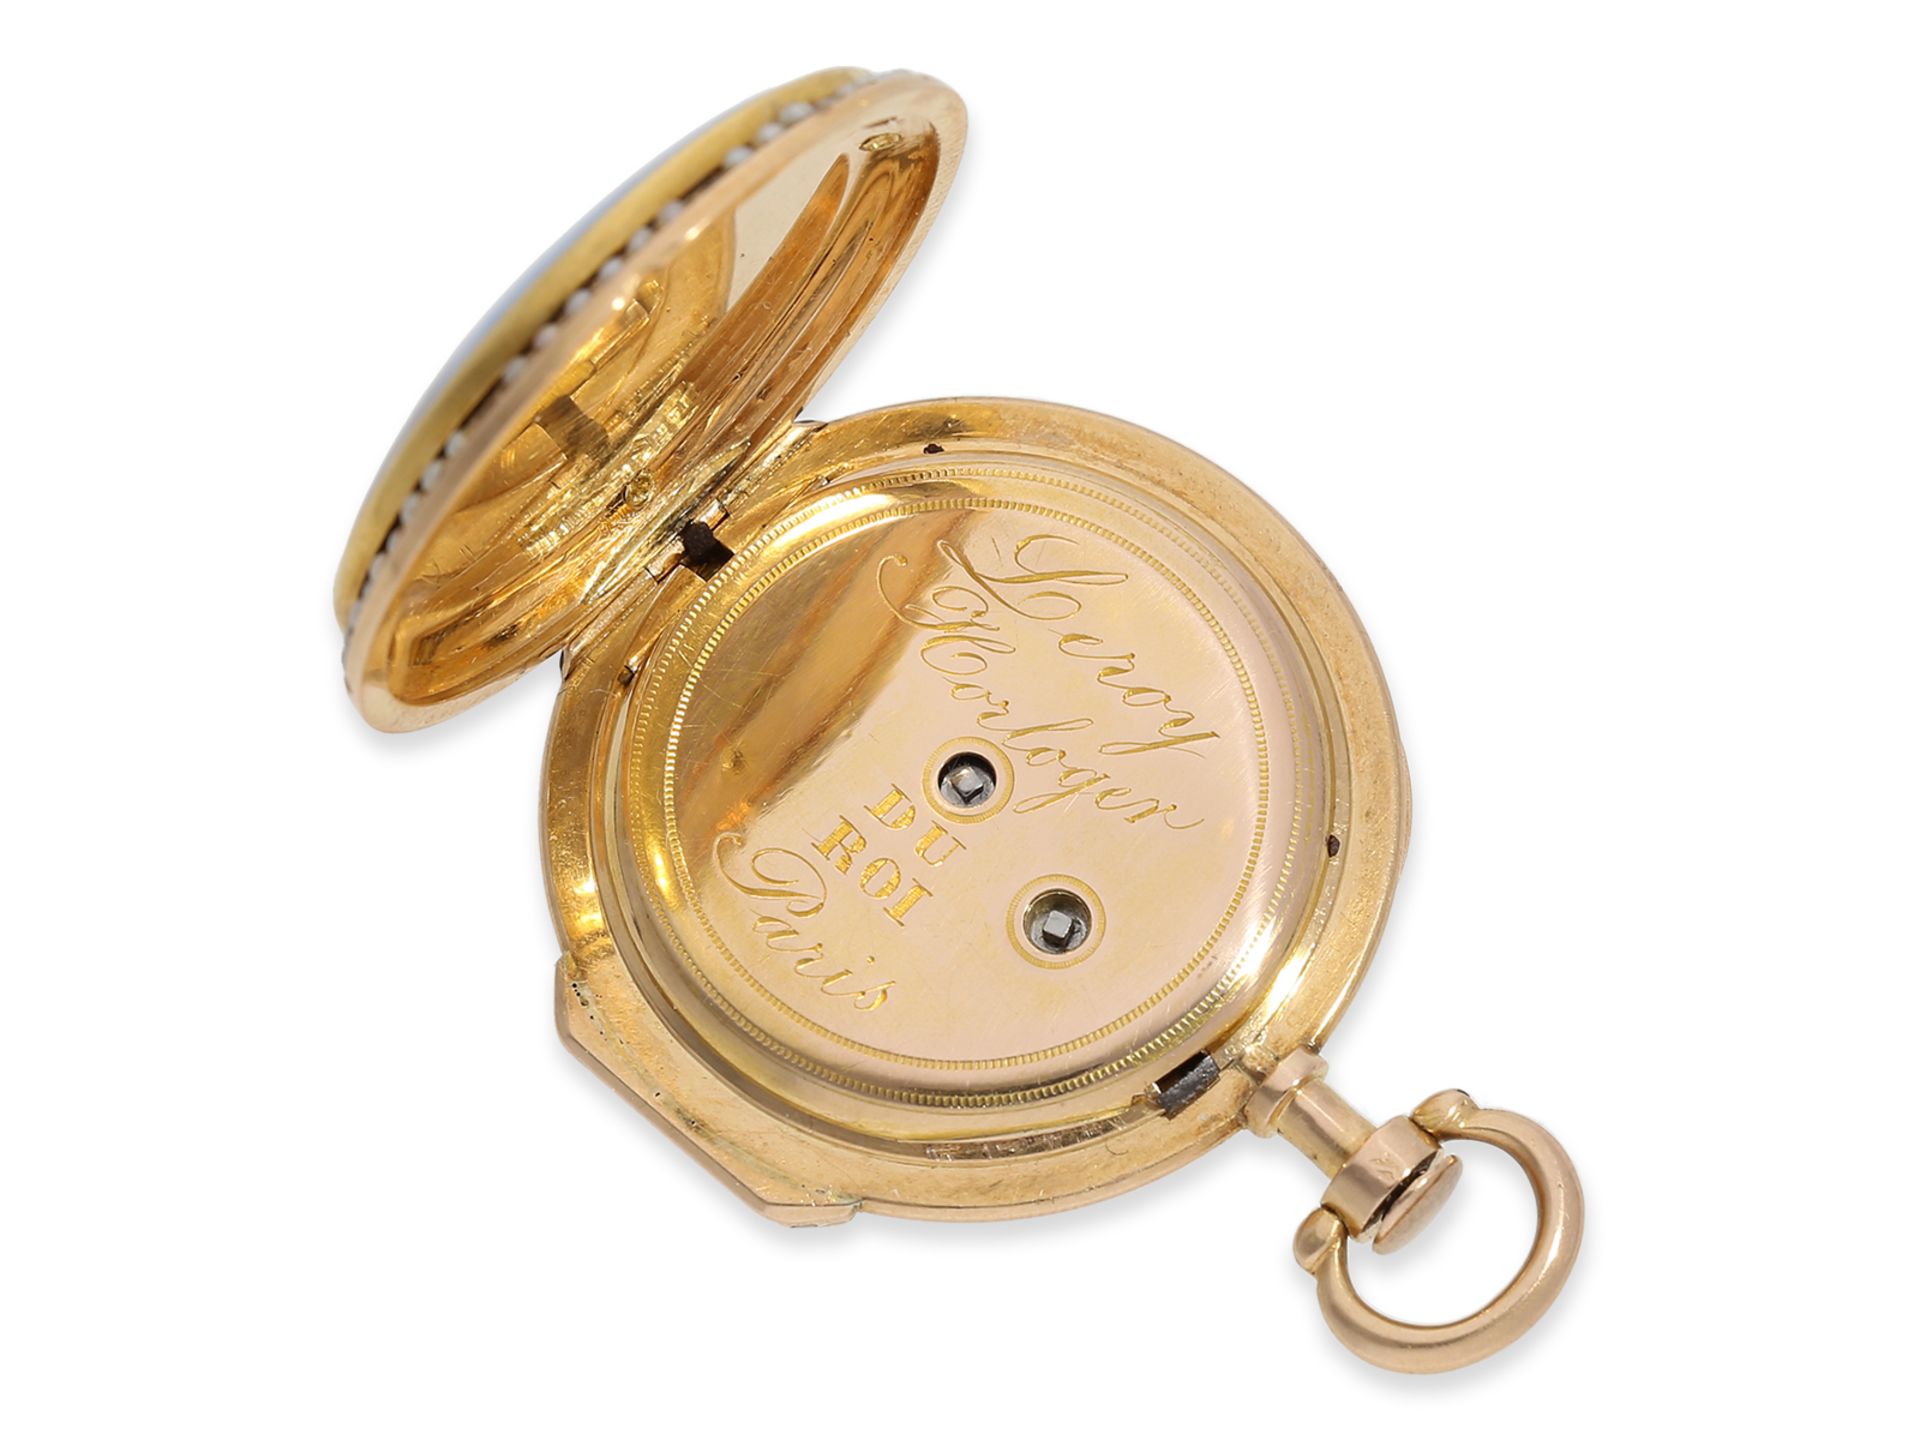 Taschenuhr: exquisite "Louis XV" Gold/Emaille-Spindeluhr mit Perlenbesatz, fantastische Qualität, kö - Bild 4 aus 6